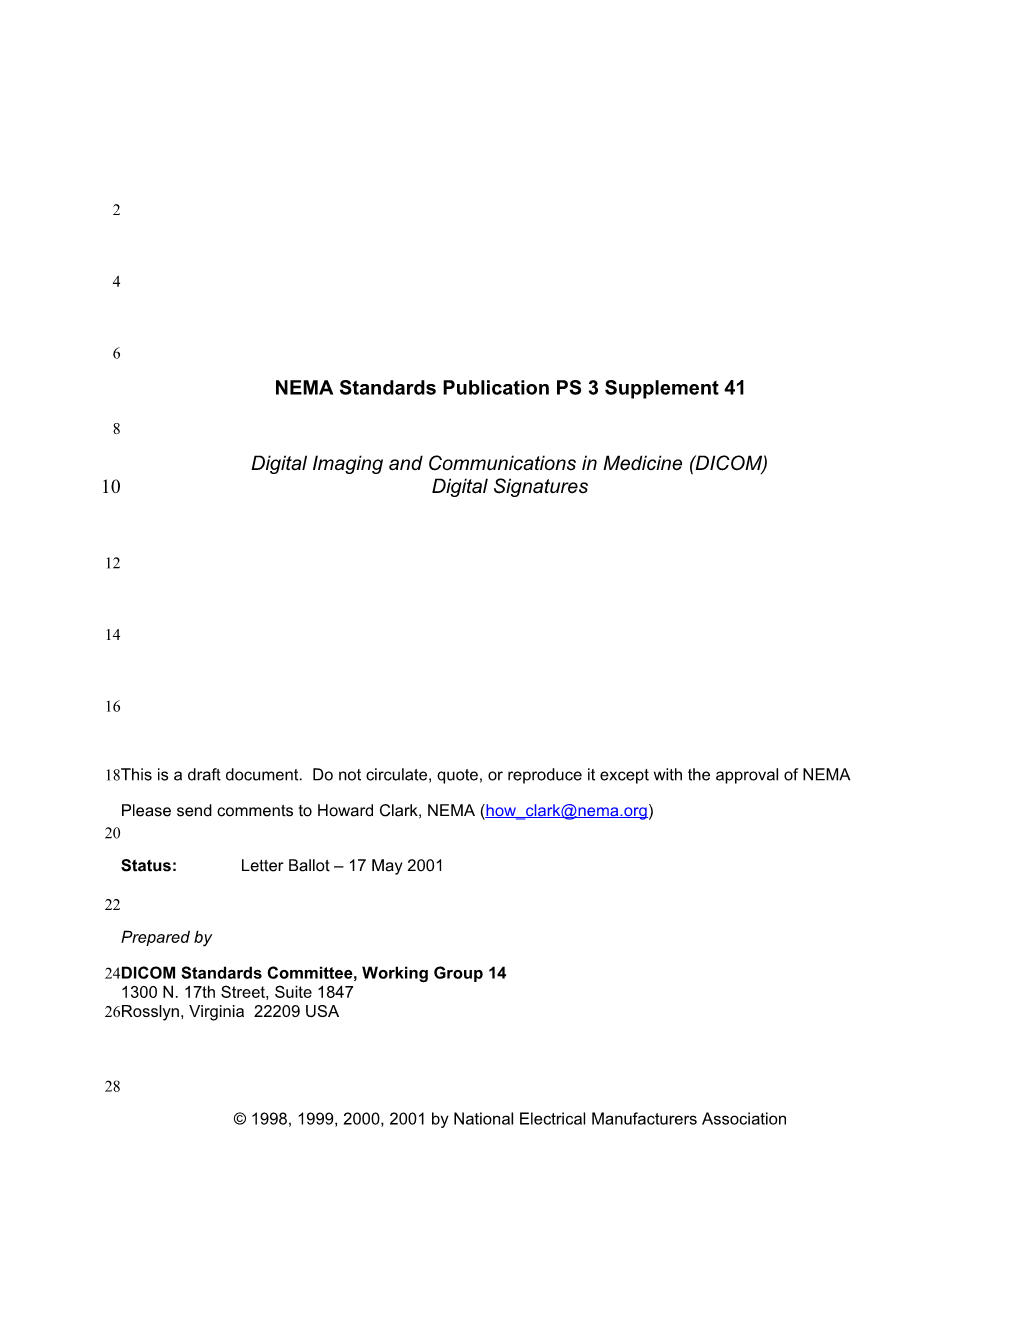 NEMA Standards Publication PS 3 Supplement 41